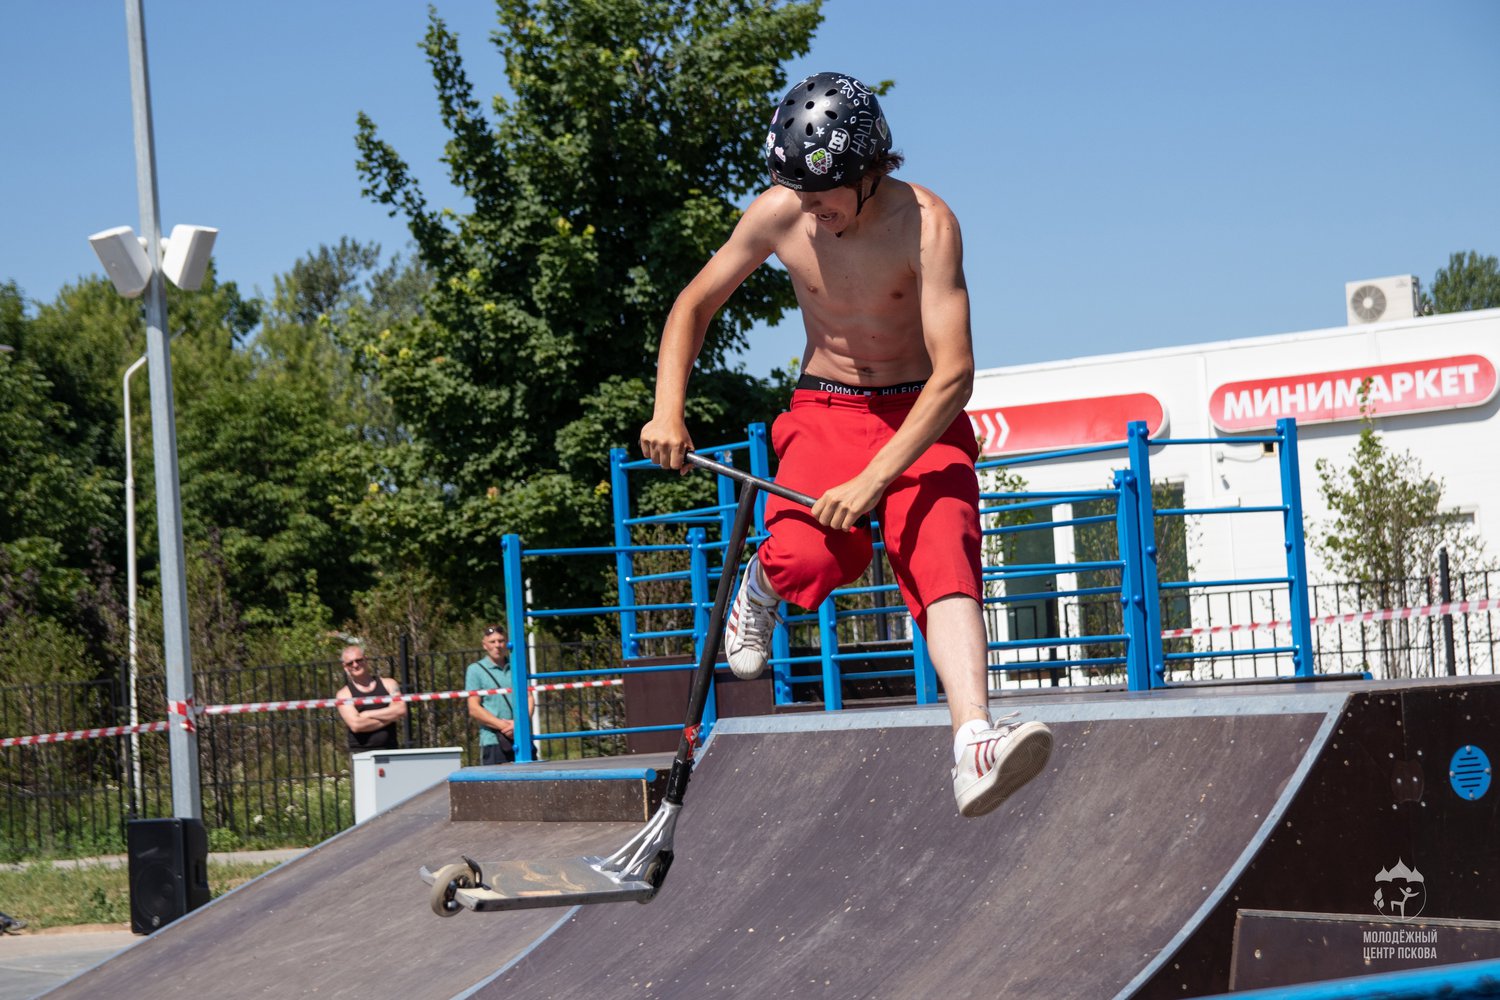 20 августа с 10:00 до 20:00 состоится фестиваль уличной культуры «Плеск», который пройдёт во Пскове на скейт-парке сквера имени Александра Невского.